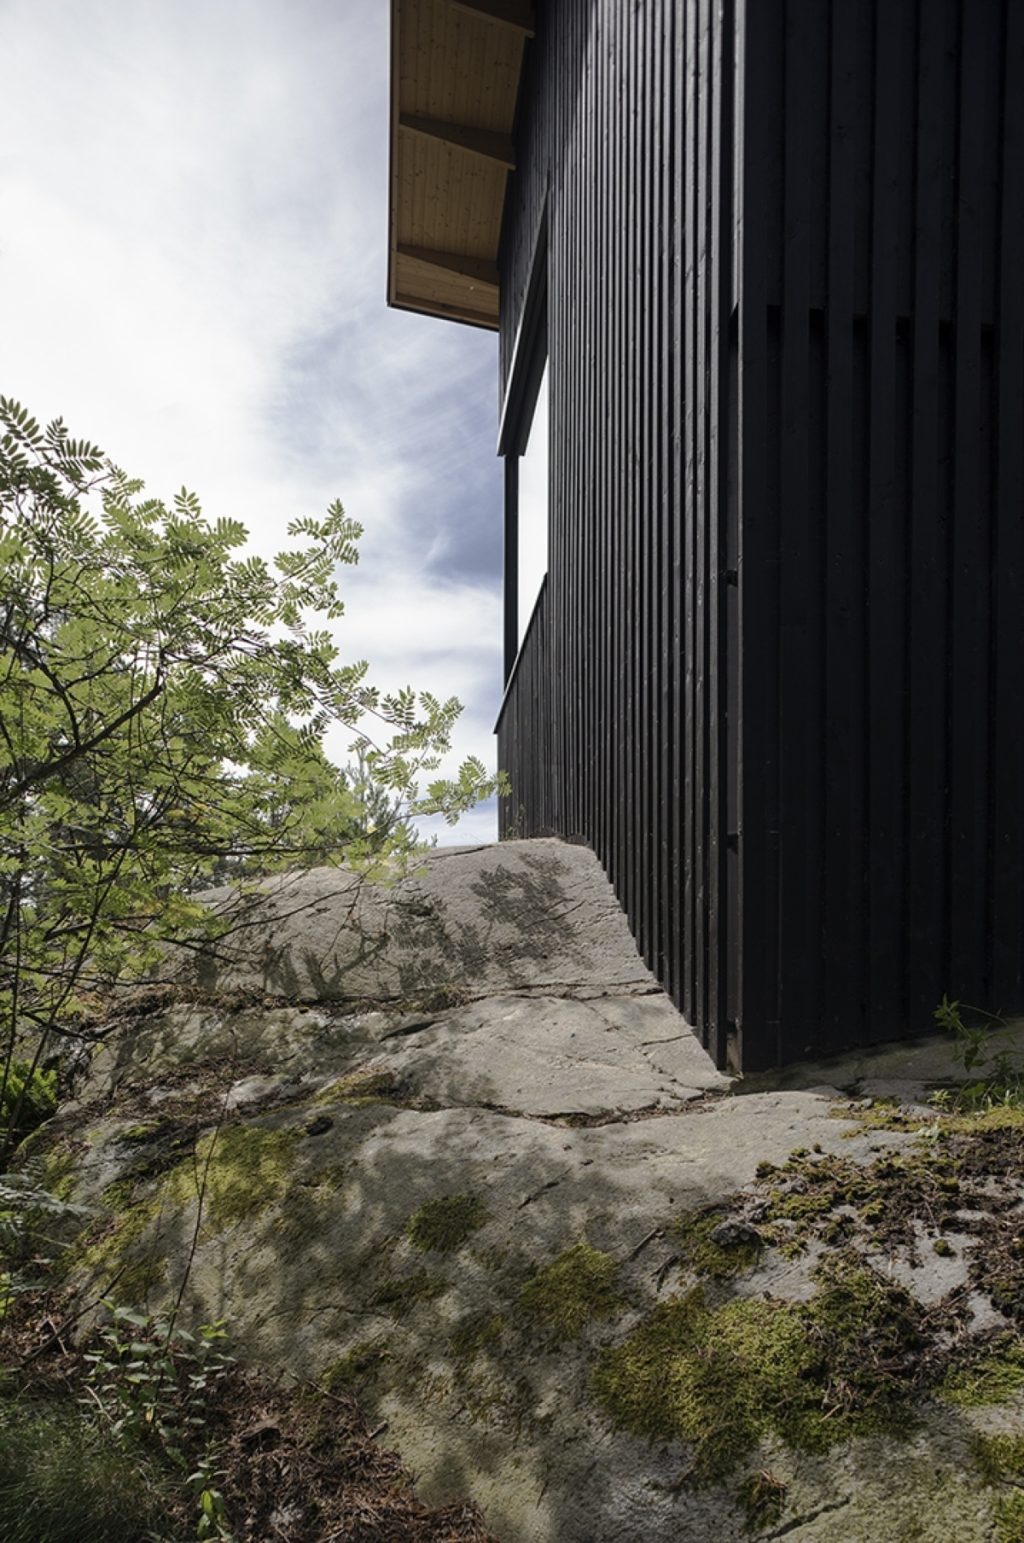 Συναισθηματική αρχιτεκτονική βίλα Sjoviken στη νότια Φινλανδία. Αρχιτέκτονες Jenni Reuter